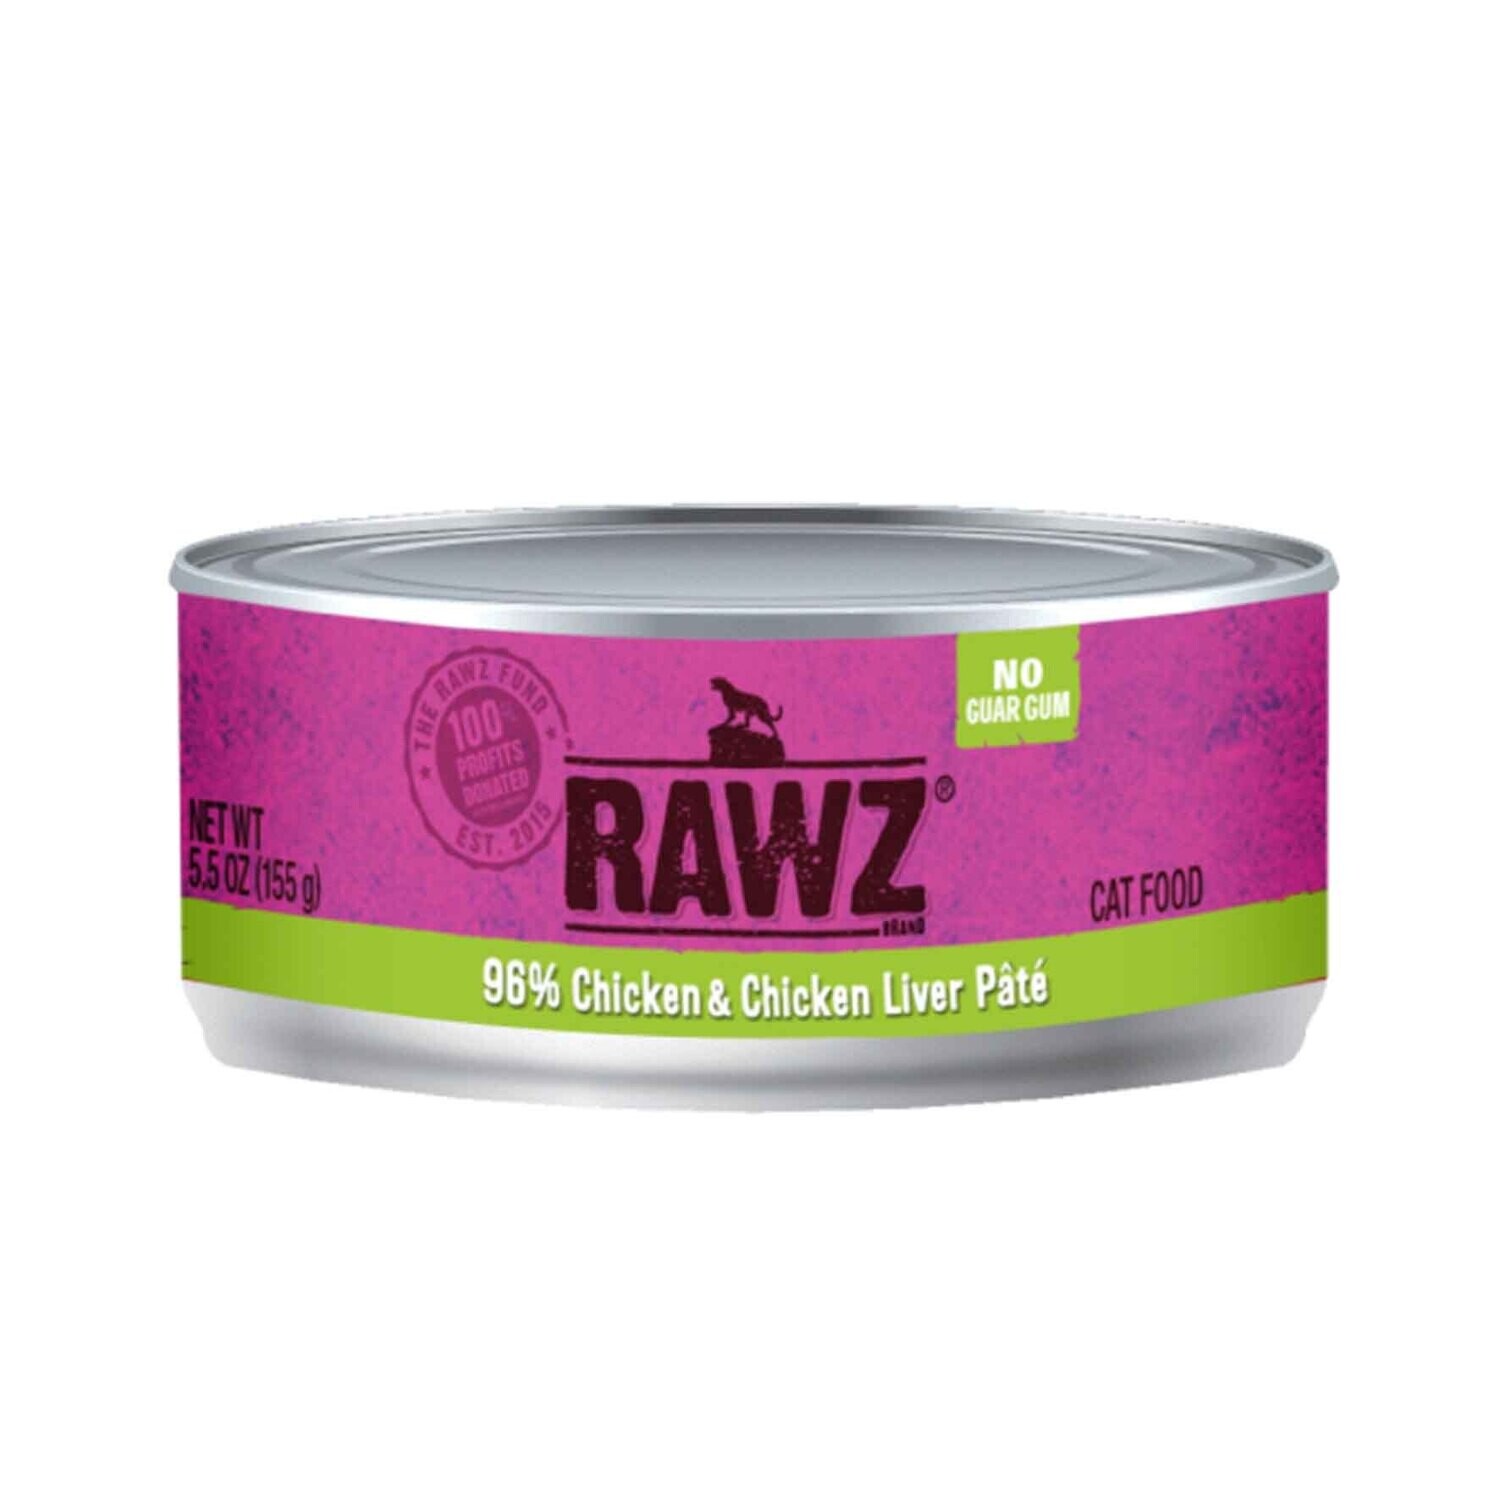 Rawz® Grain Free 96% Chicken & Chicken Liver Wet Cat Food 5.5oz